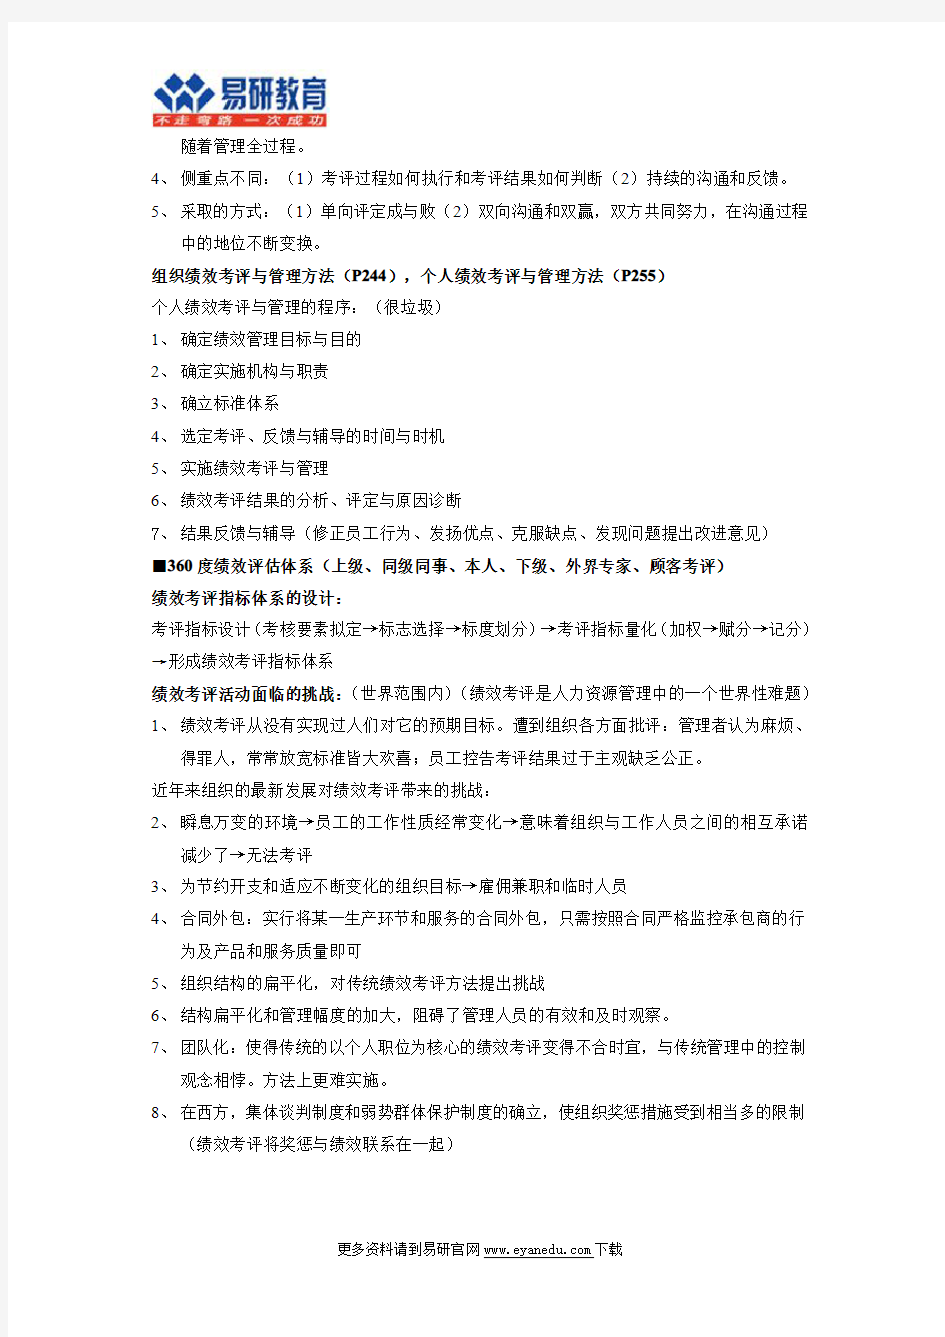 【北京大学行政管理考研】状元392分专业课笔记(6)